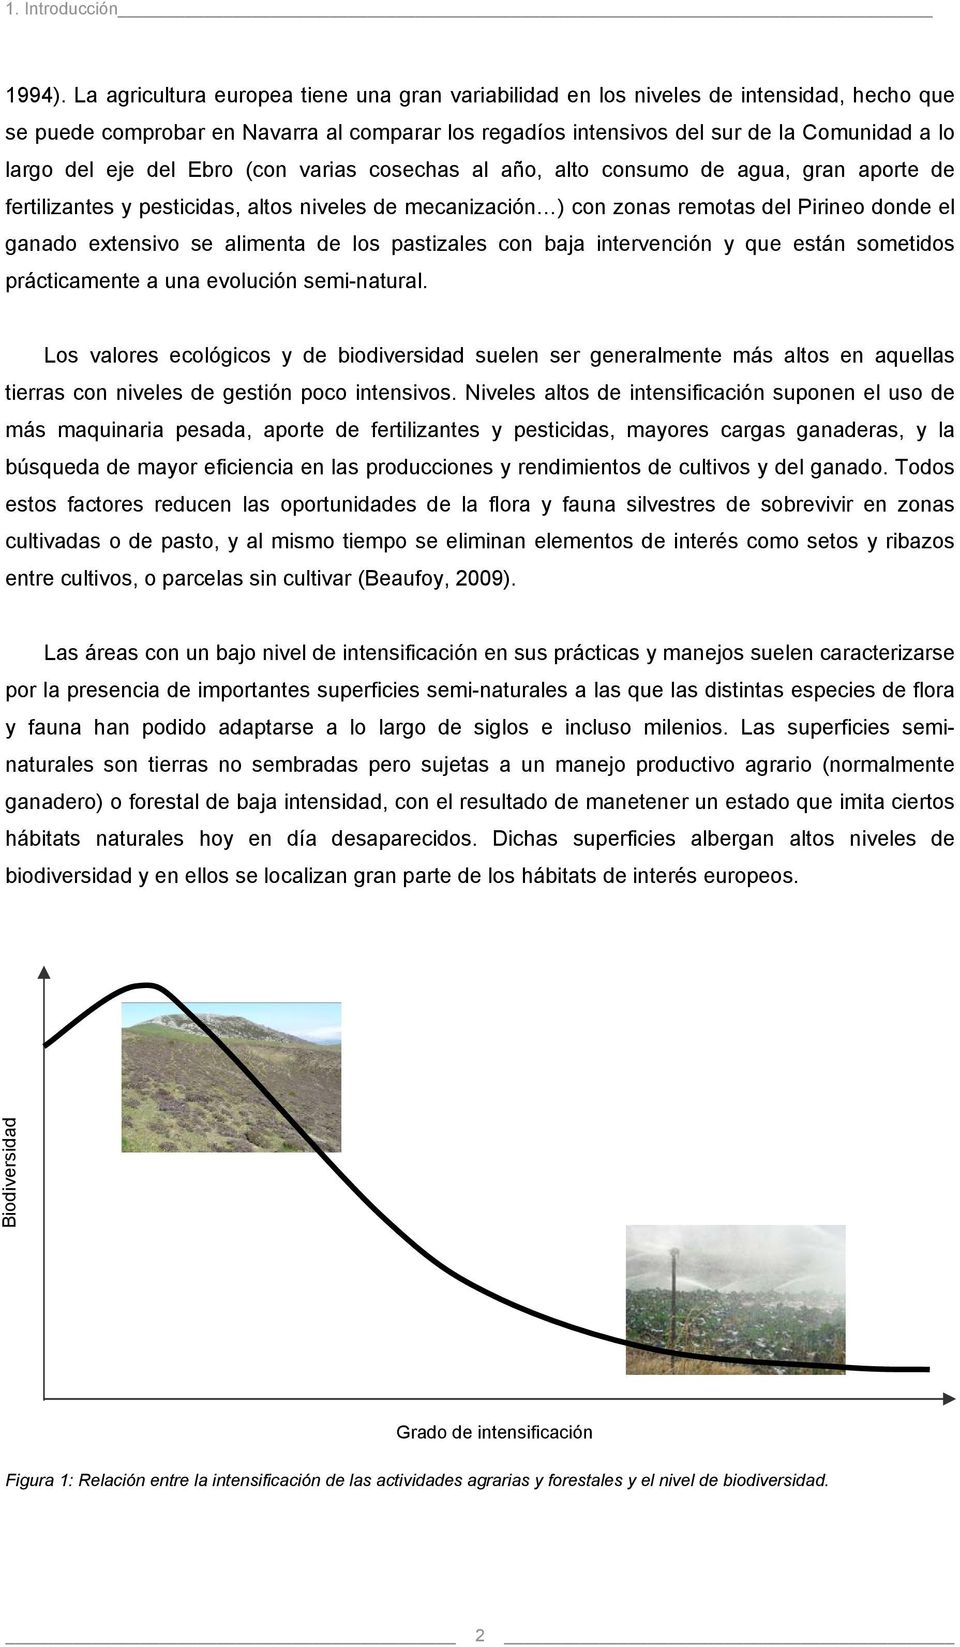 del Ebro (con varias cosechas al año, alto consumo de agua, gran aporte de fertilizantes y pesticidas, altos niveles de mecanización ) con zonas remotas del Pirineo donde el ganado extensivo se